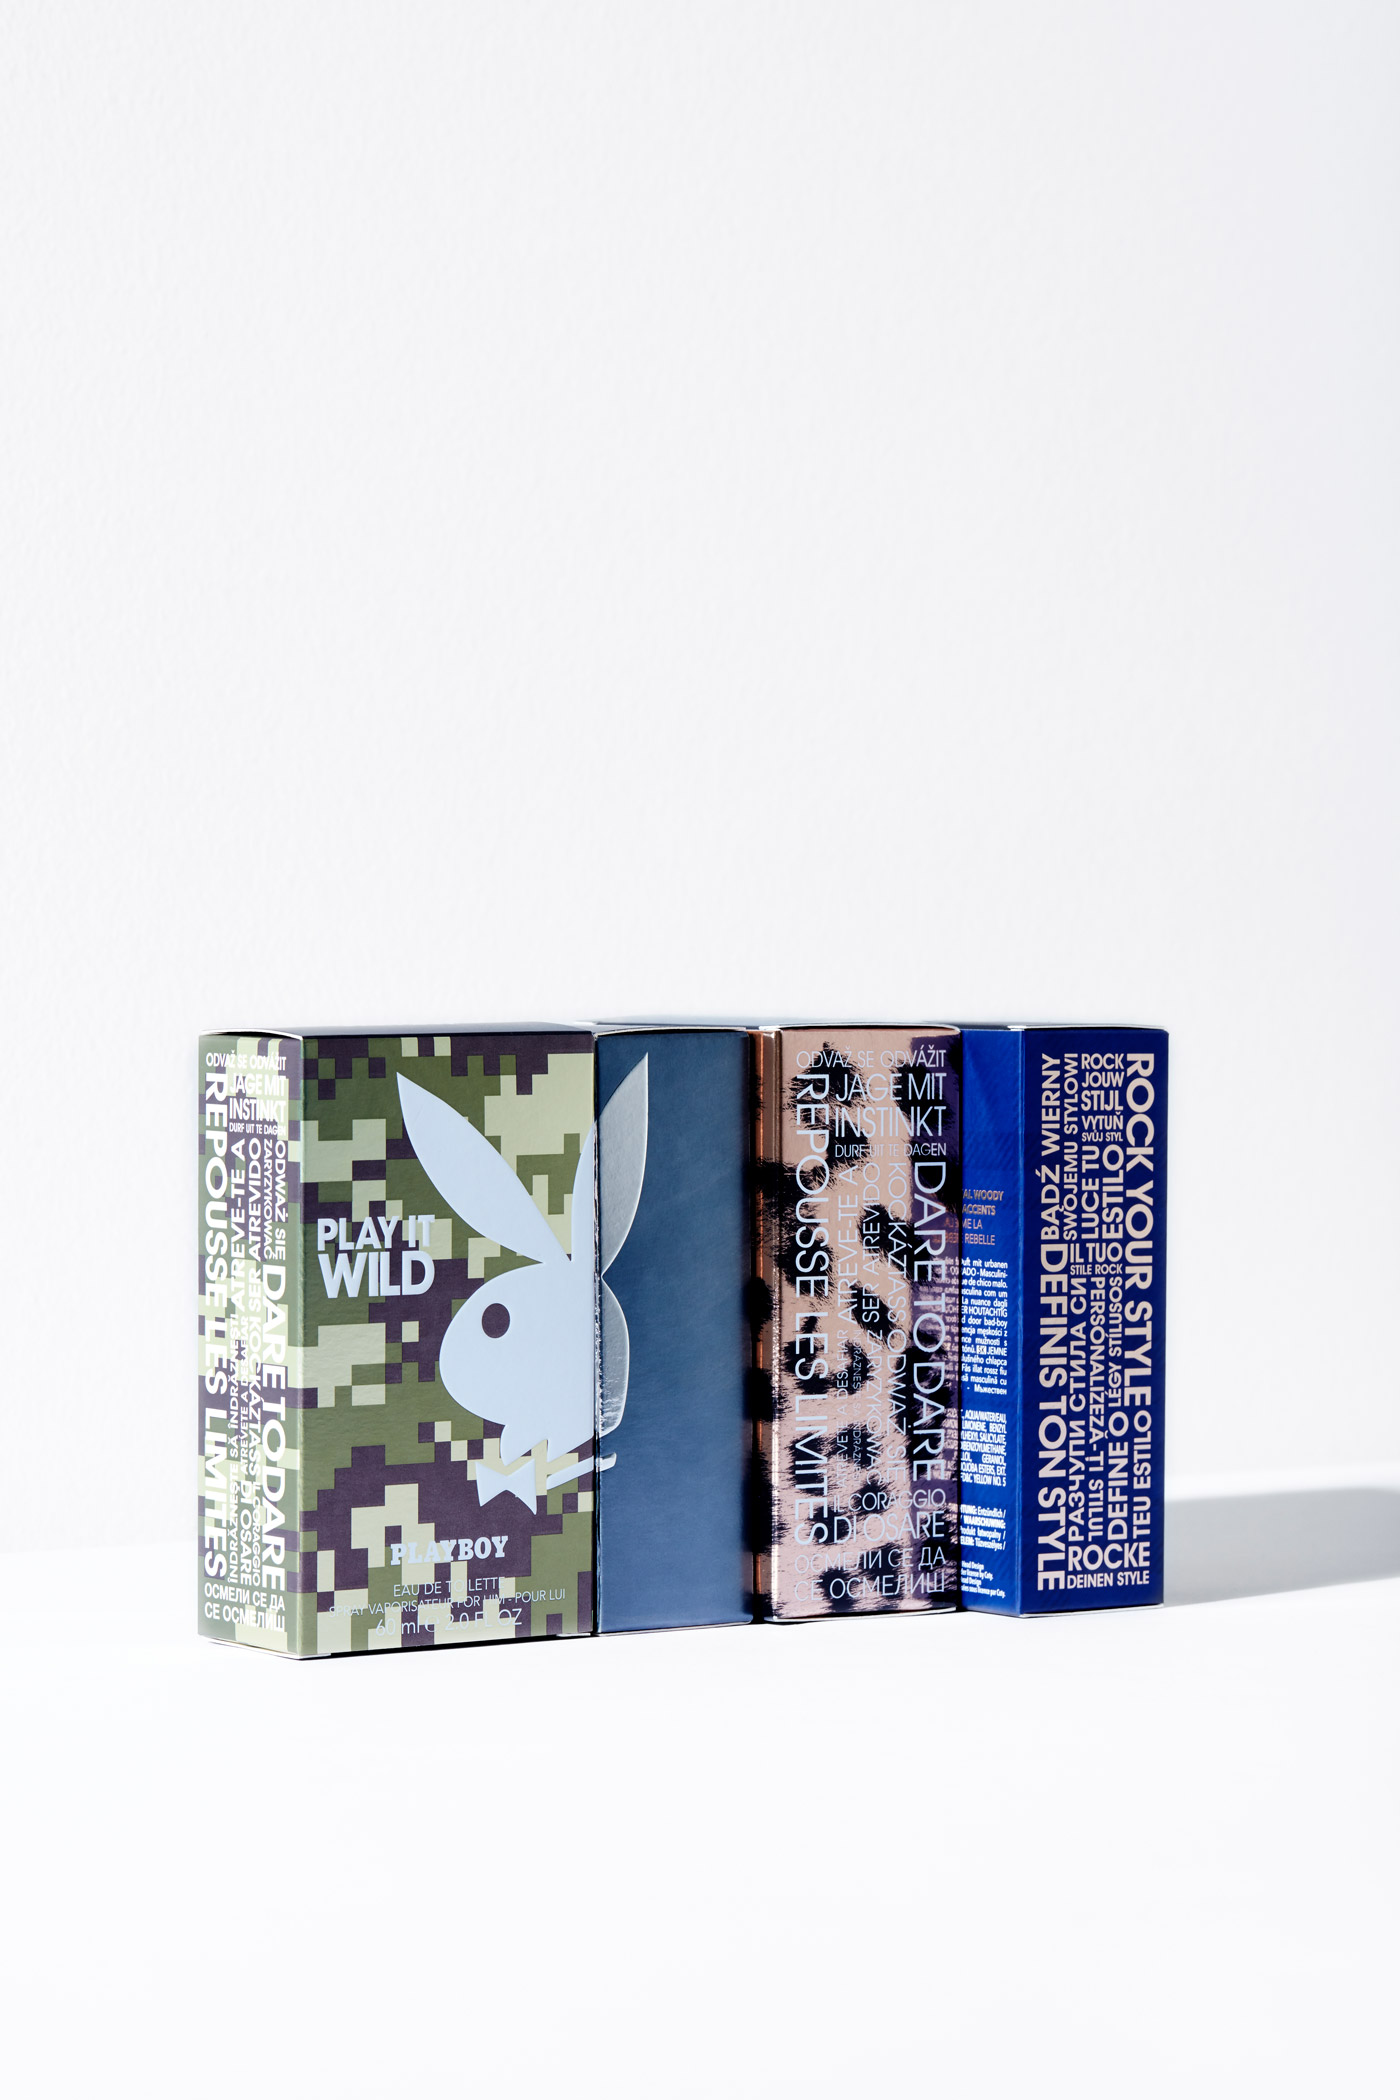 Playboy Fragrances – Packaging re-design